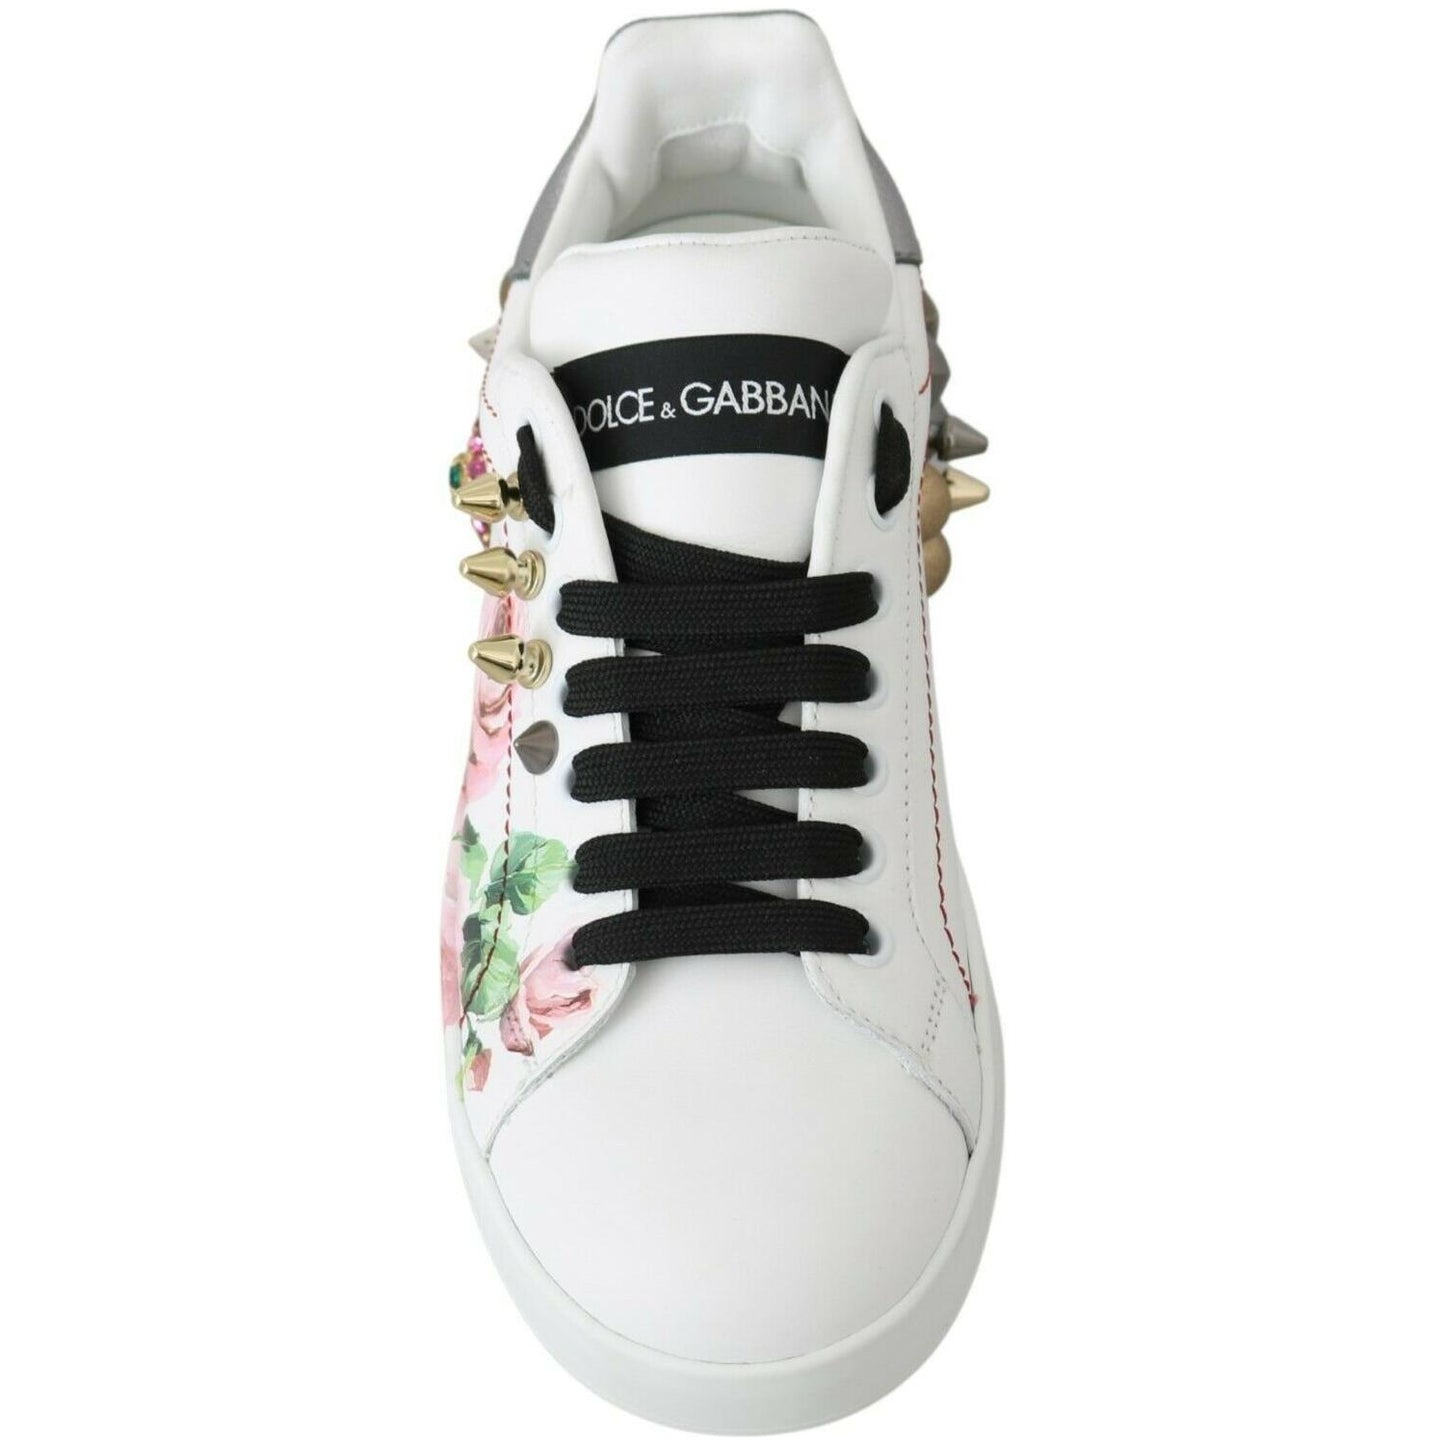 Dolce & Gabbana | Floral Crystal-Embellished Leather Sneakers| McRichard Designer Brands   